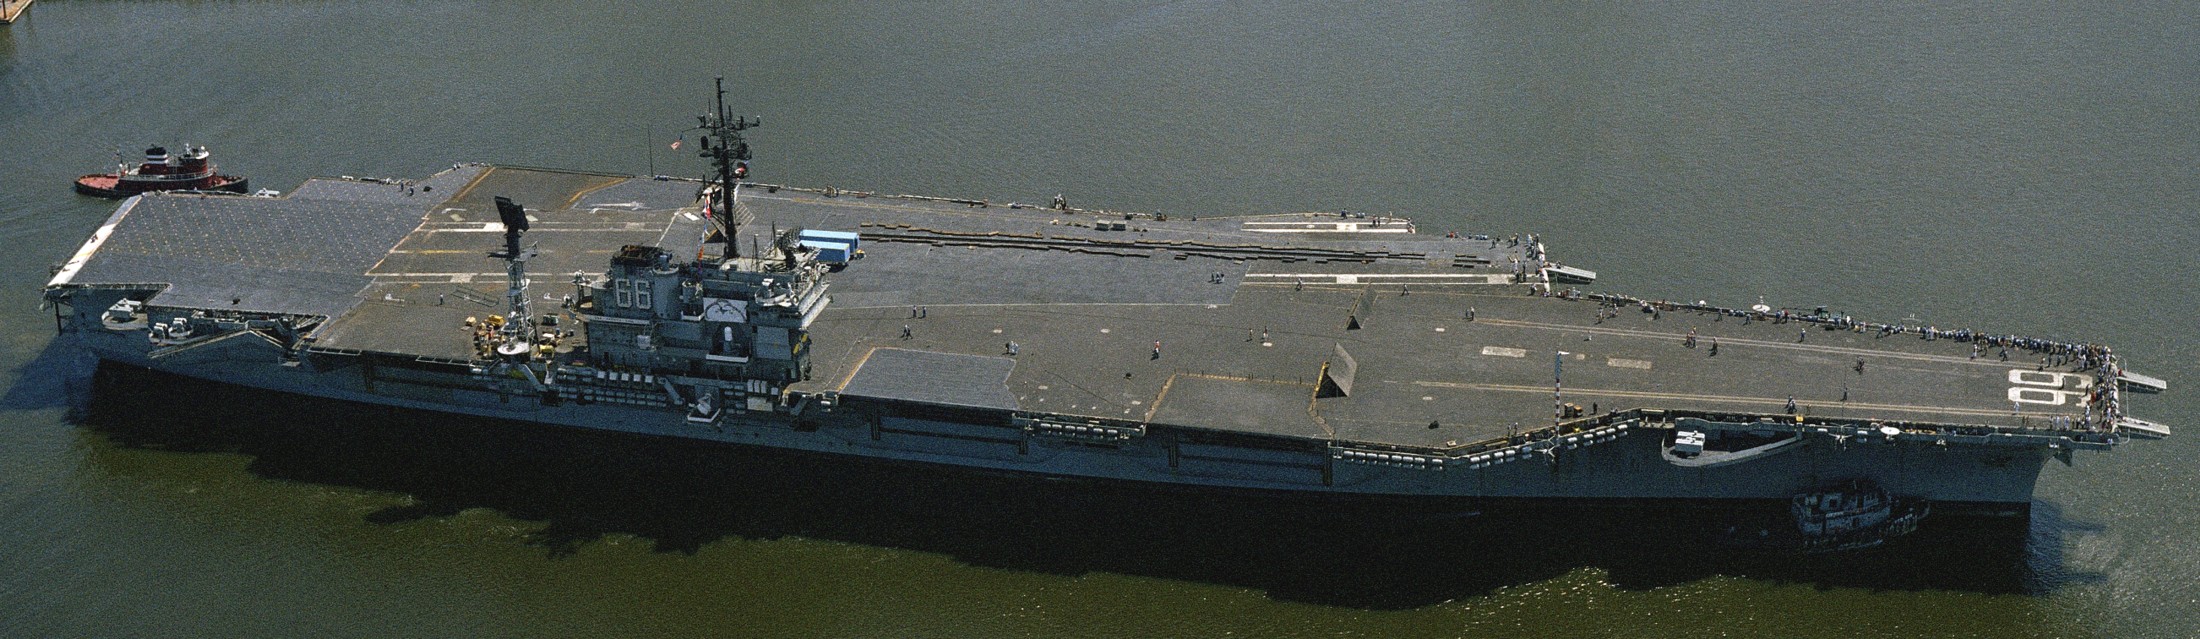 cv-66 uss america kitty hawk class aircraft carrier us navy 76